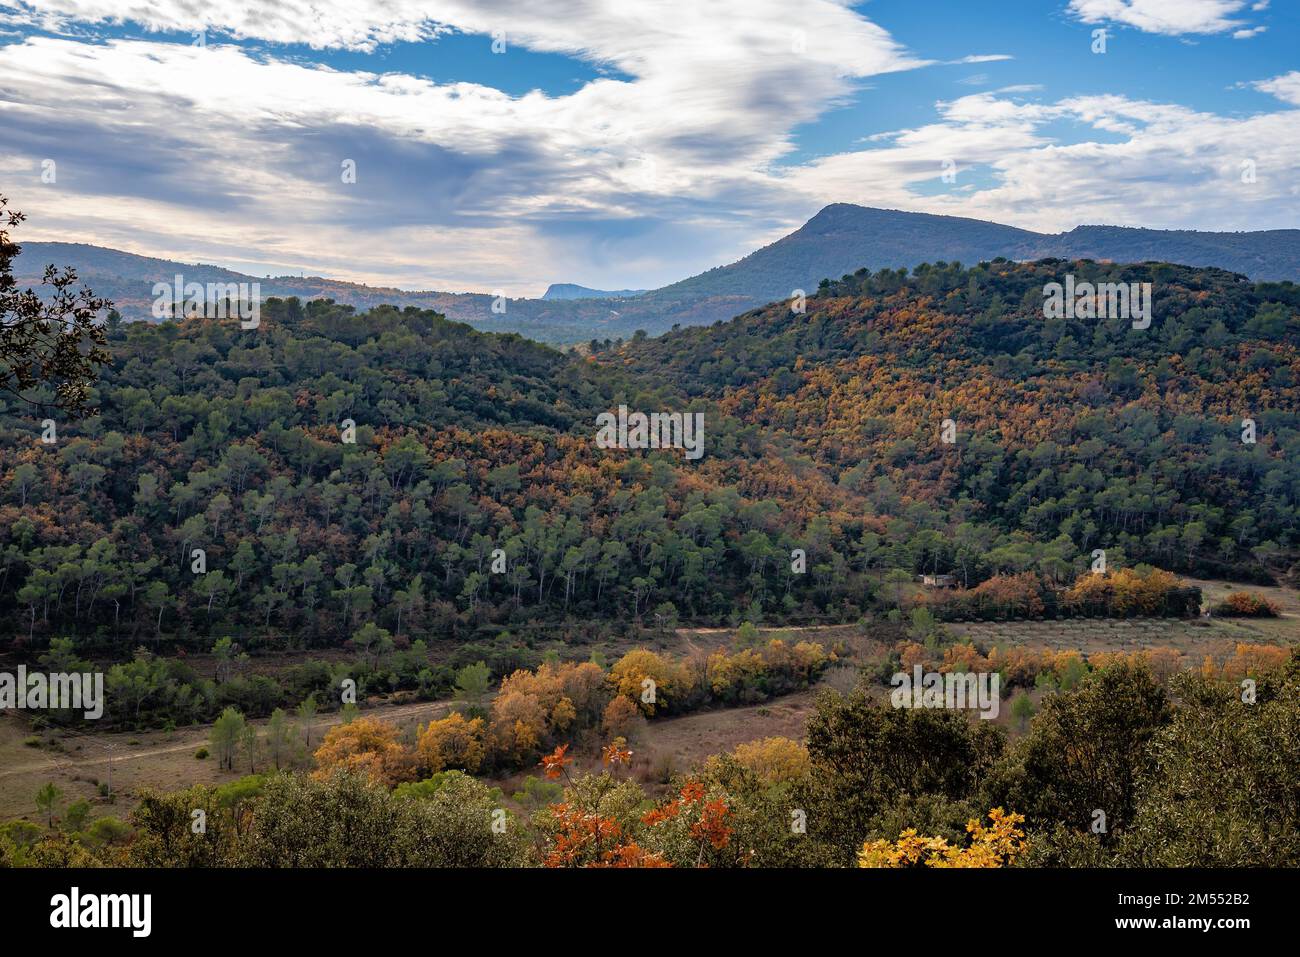 Vue sur les montagnes et les collines du Var en France, à la fin de l'automne. Les feuilles des arbres deviennent jaunes et rouges Banque D'Images